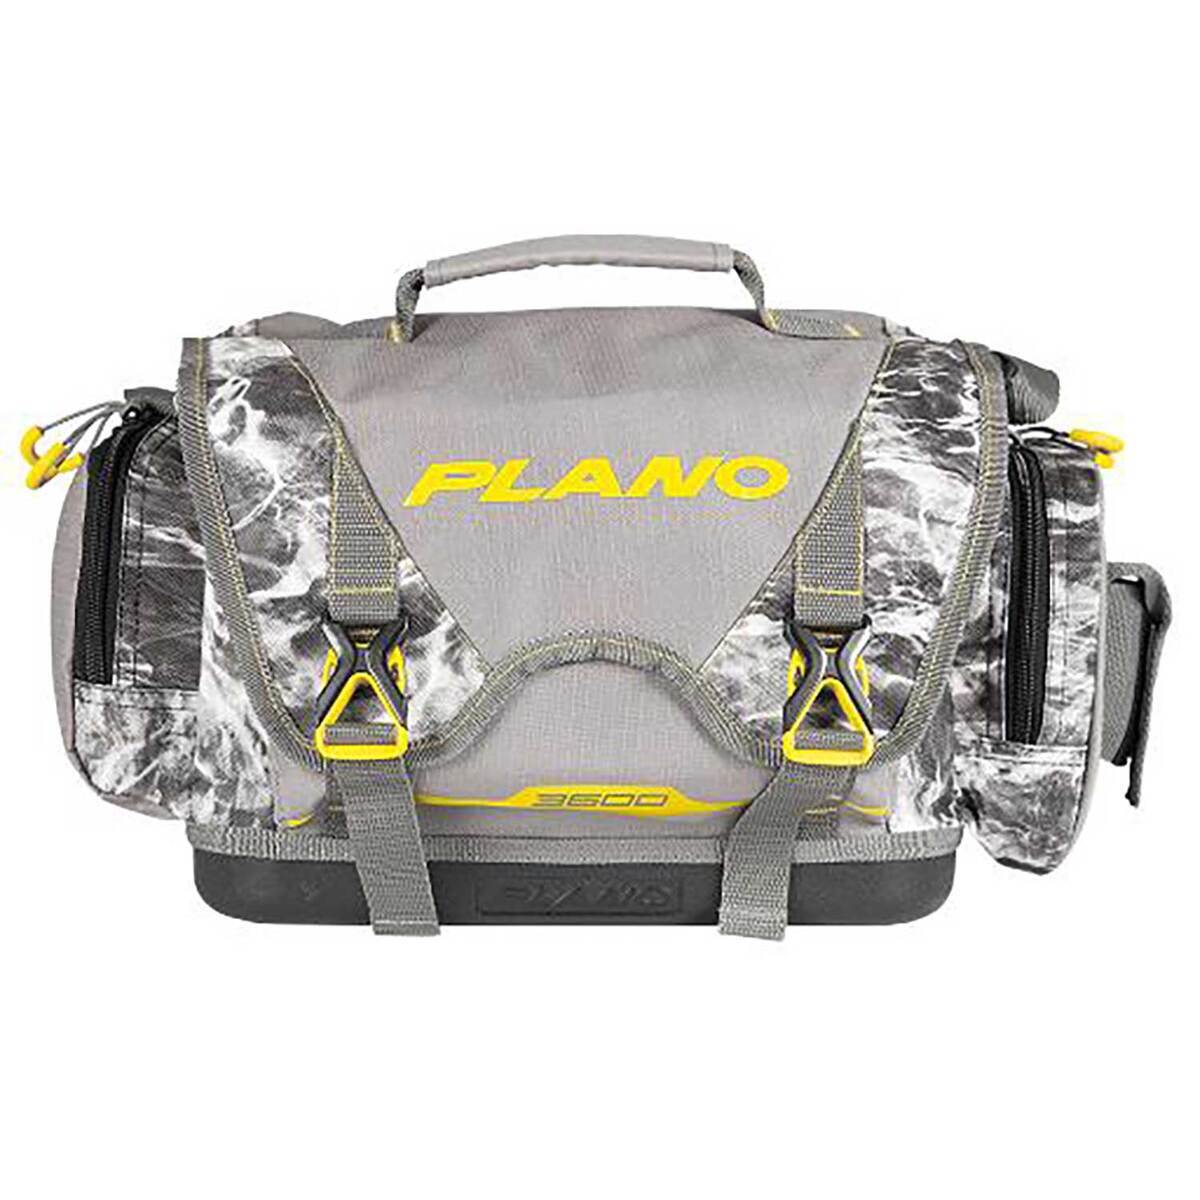 Plano Tackle Bag, 3601, B-Series